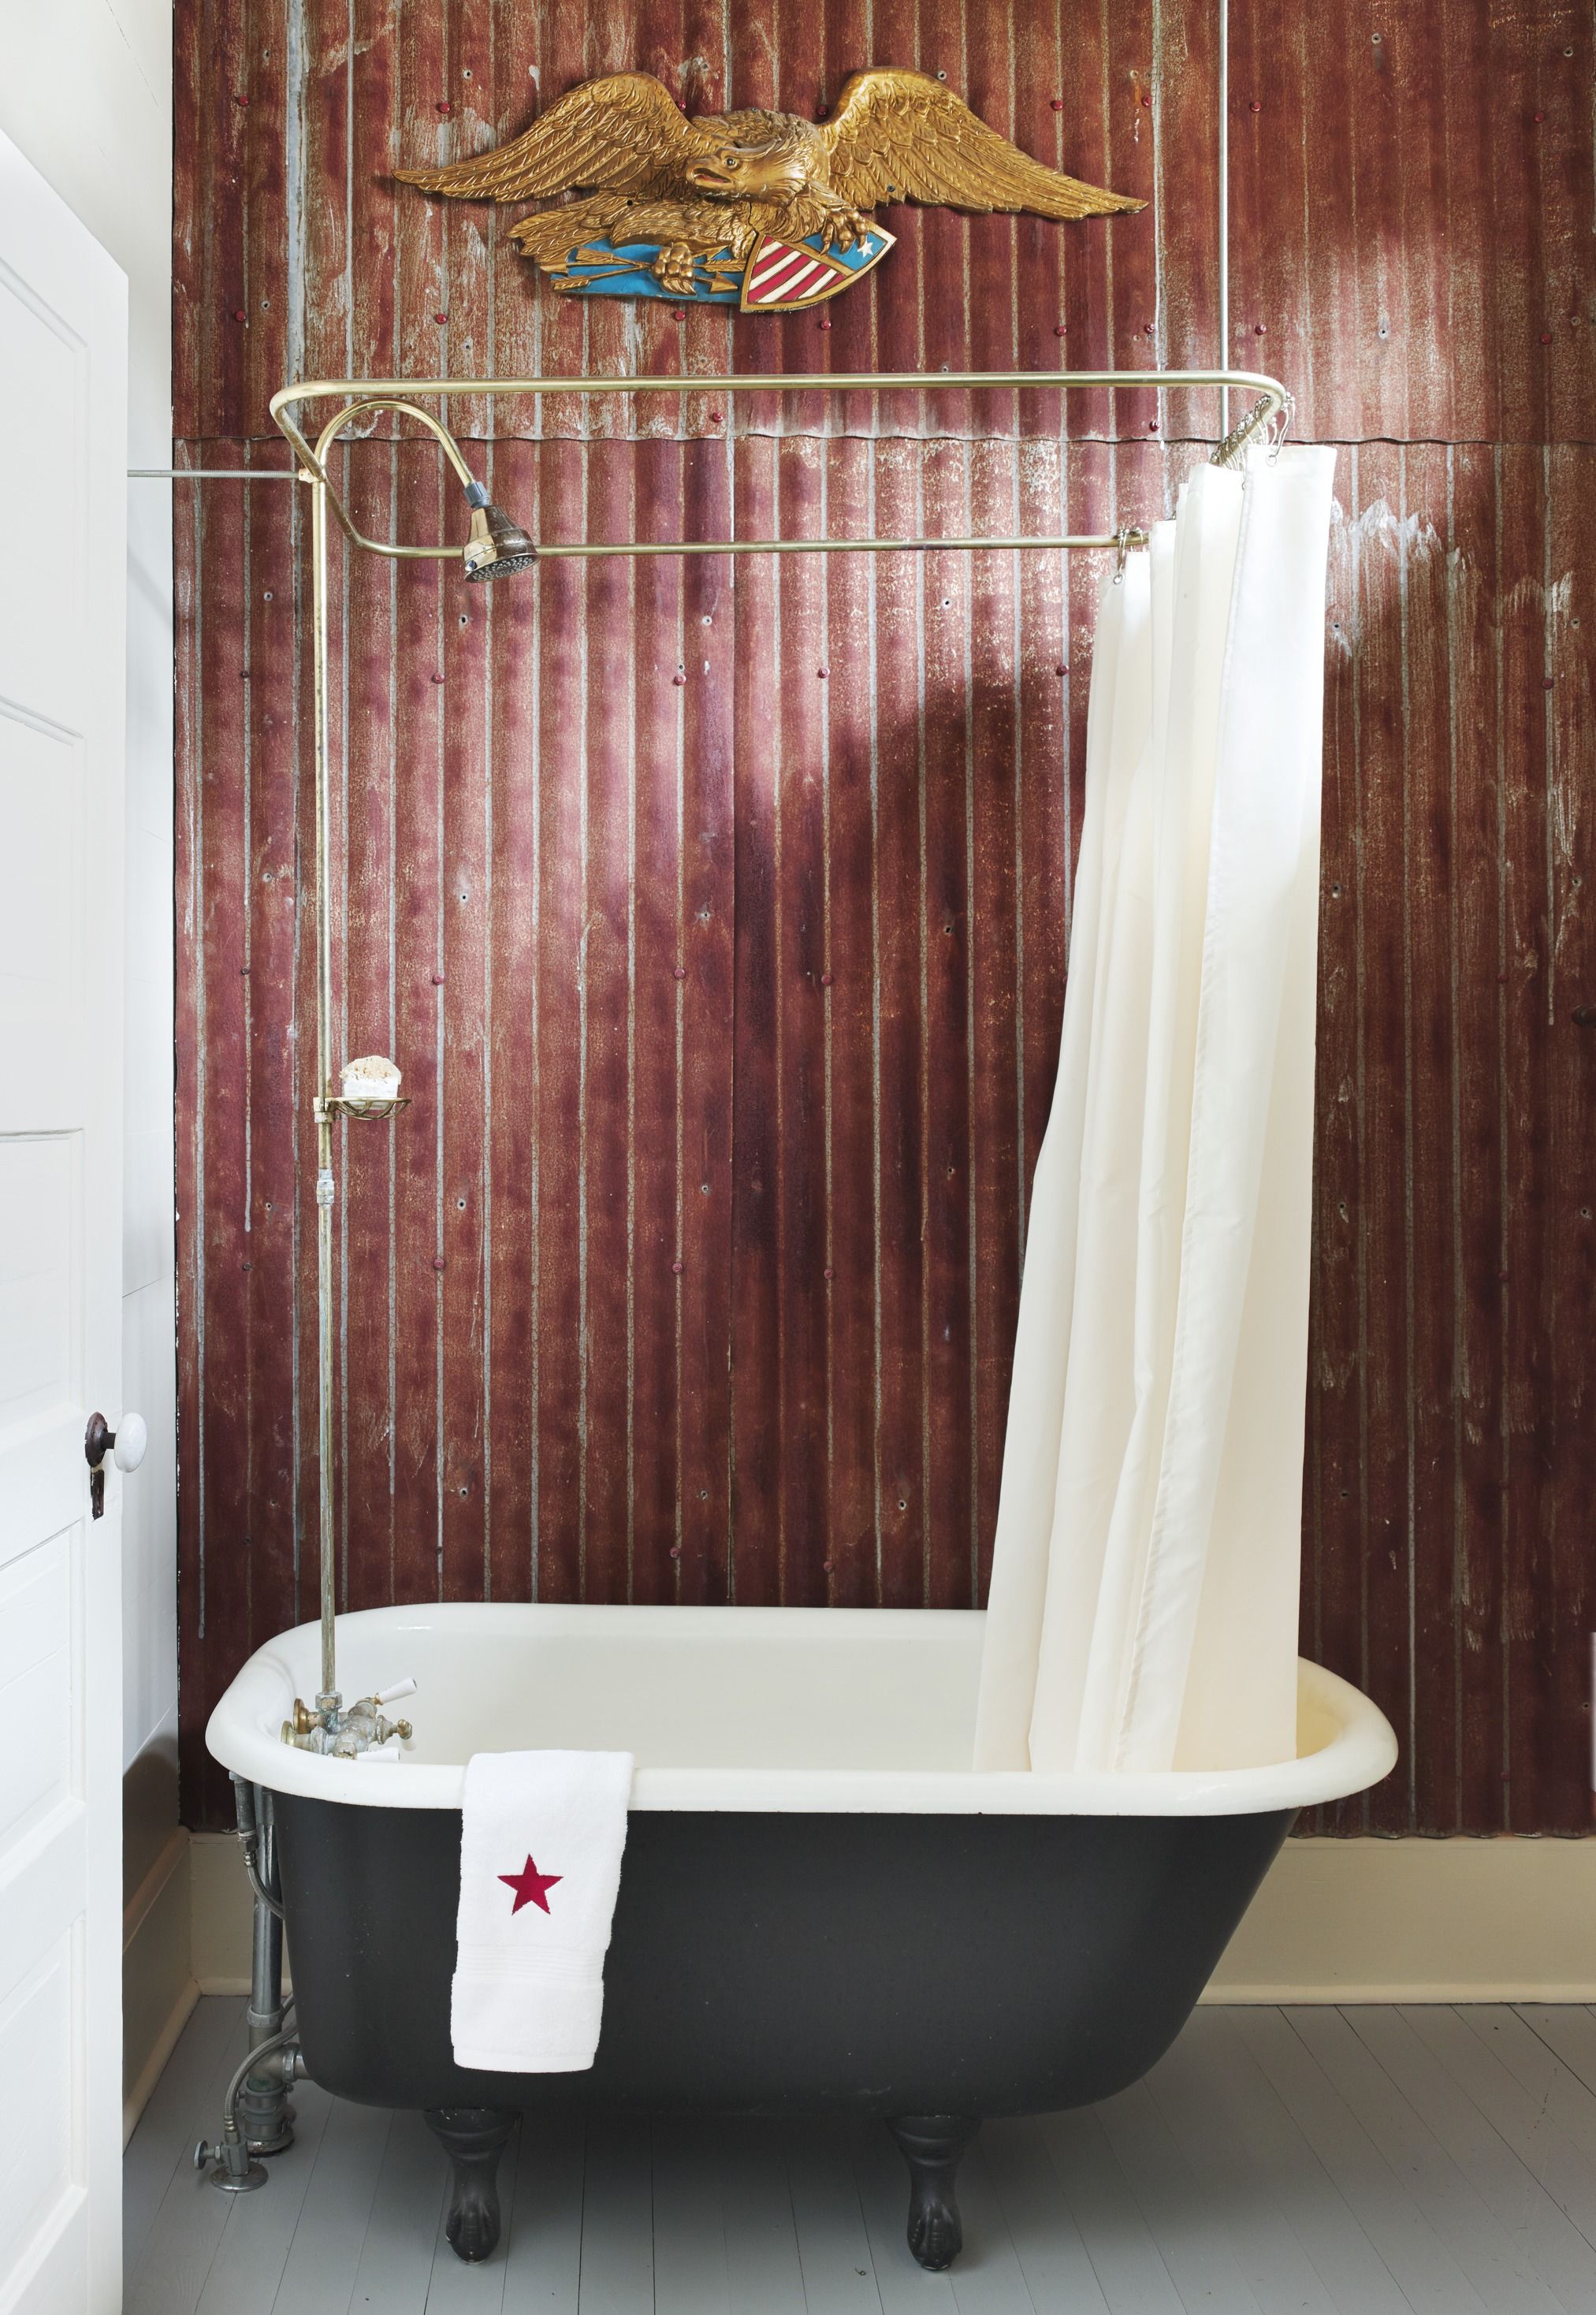 Clawfoot Tub Ideas For Your Bathroom, Bear Claw Bathtub Faucets